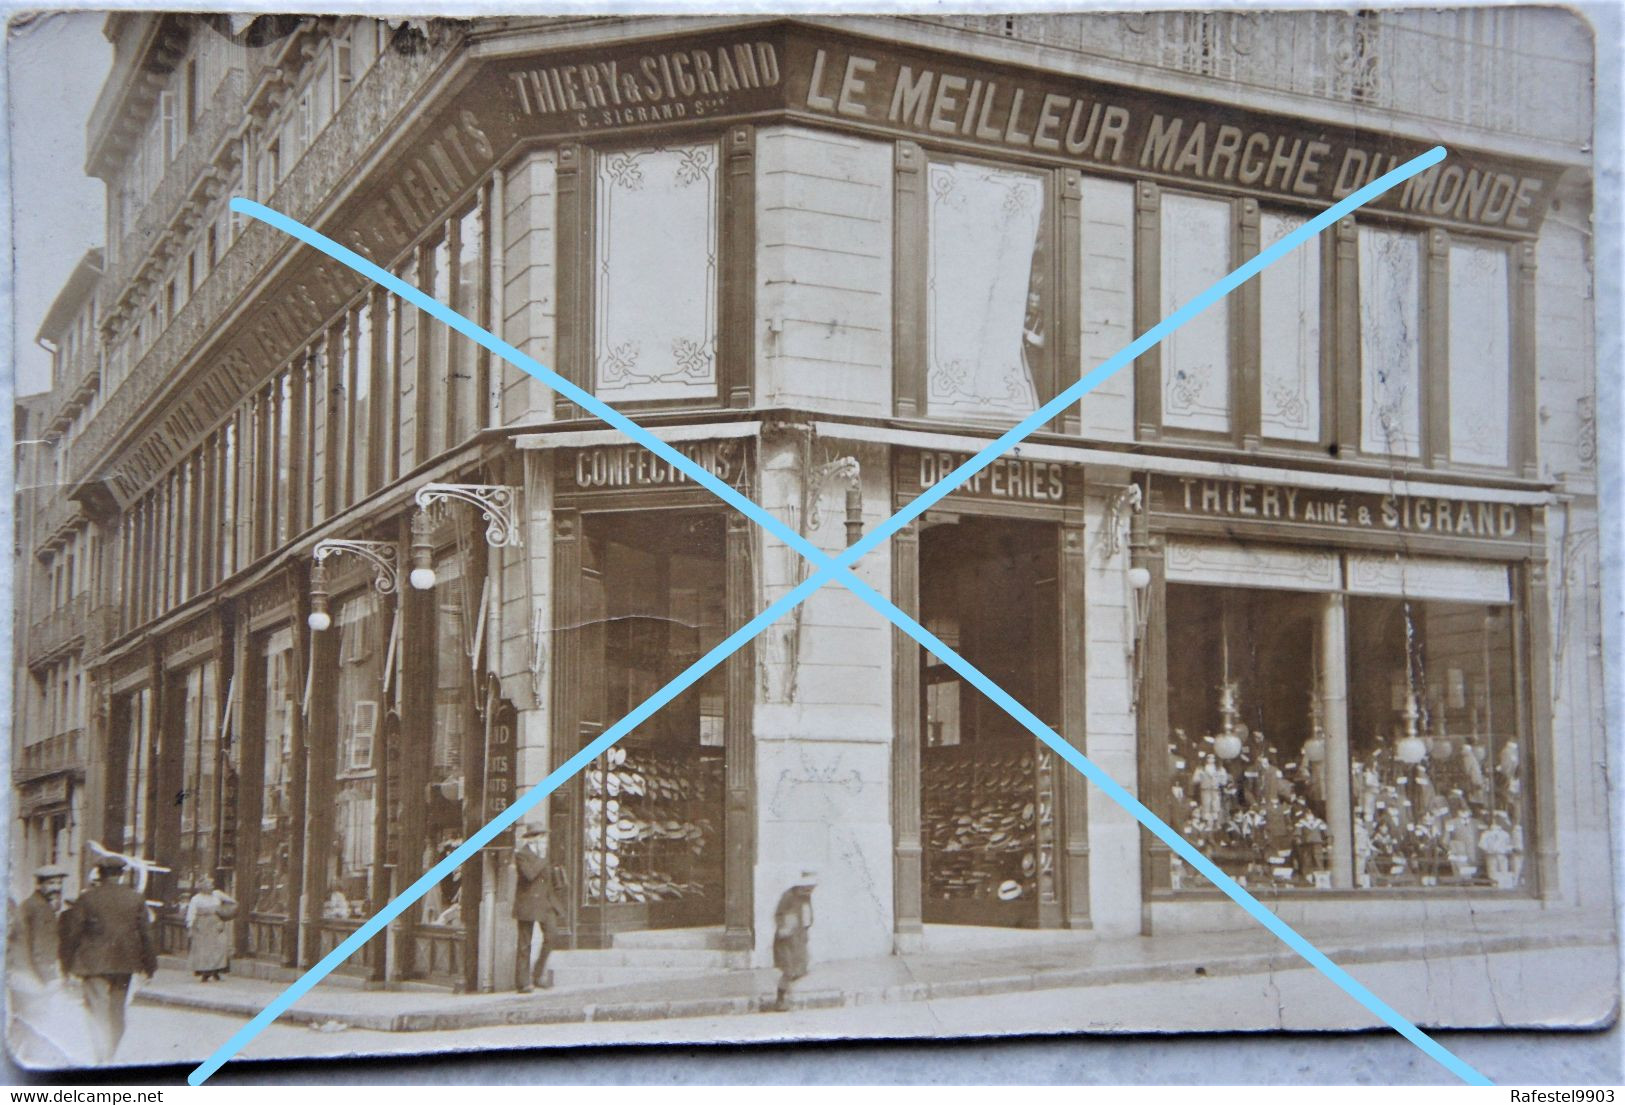 Photo TOULON LA SEYNE SUR MER Var Commerce Confection Tailleur Thiery Aimé Et Sigrand Pre 1914 - Places